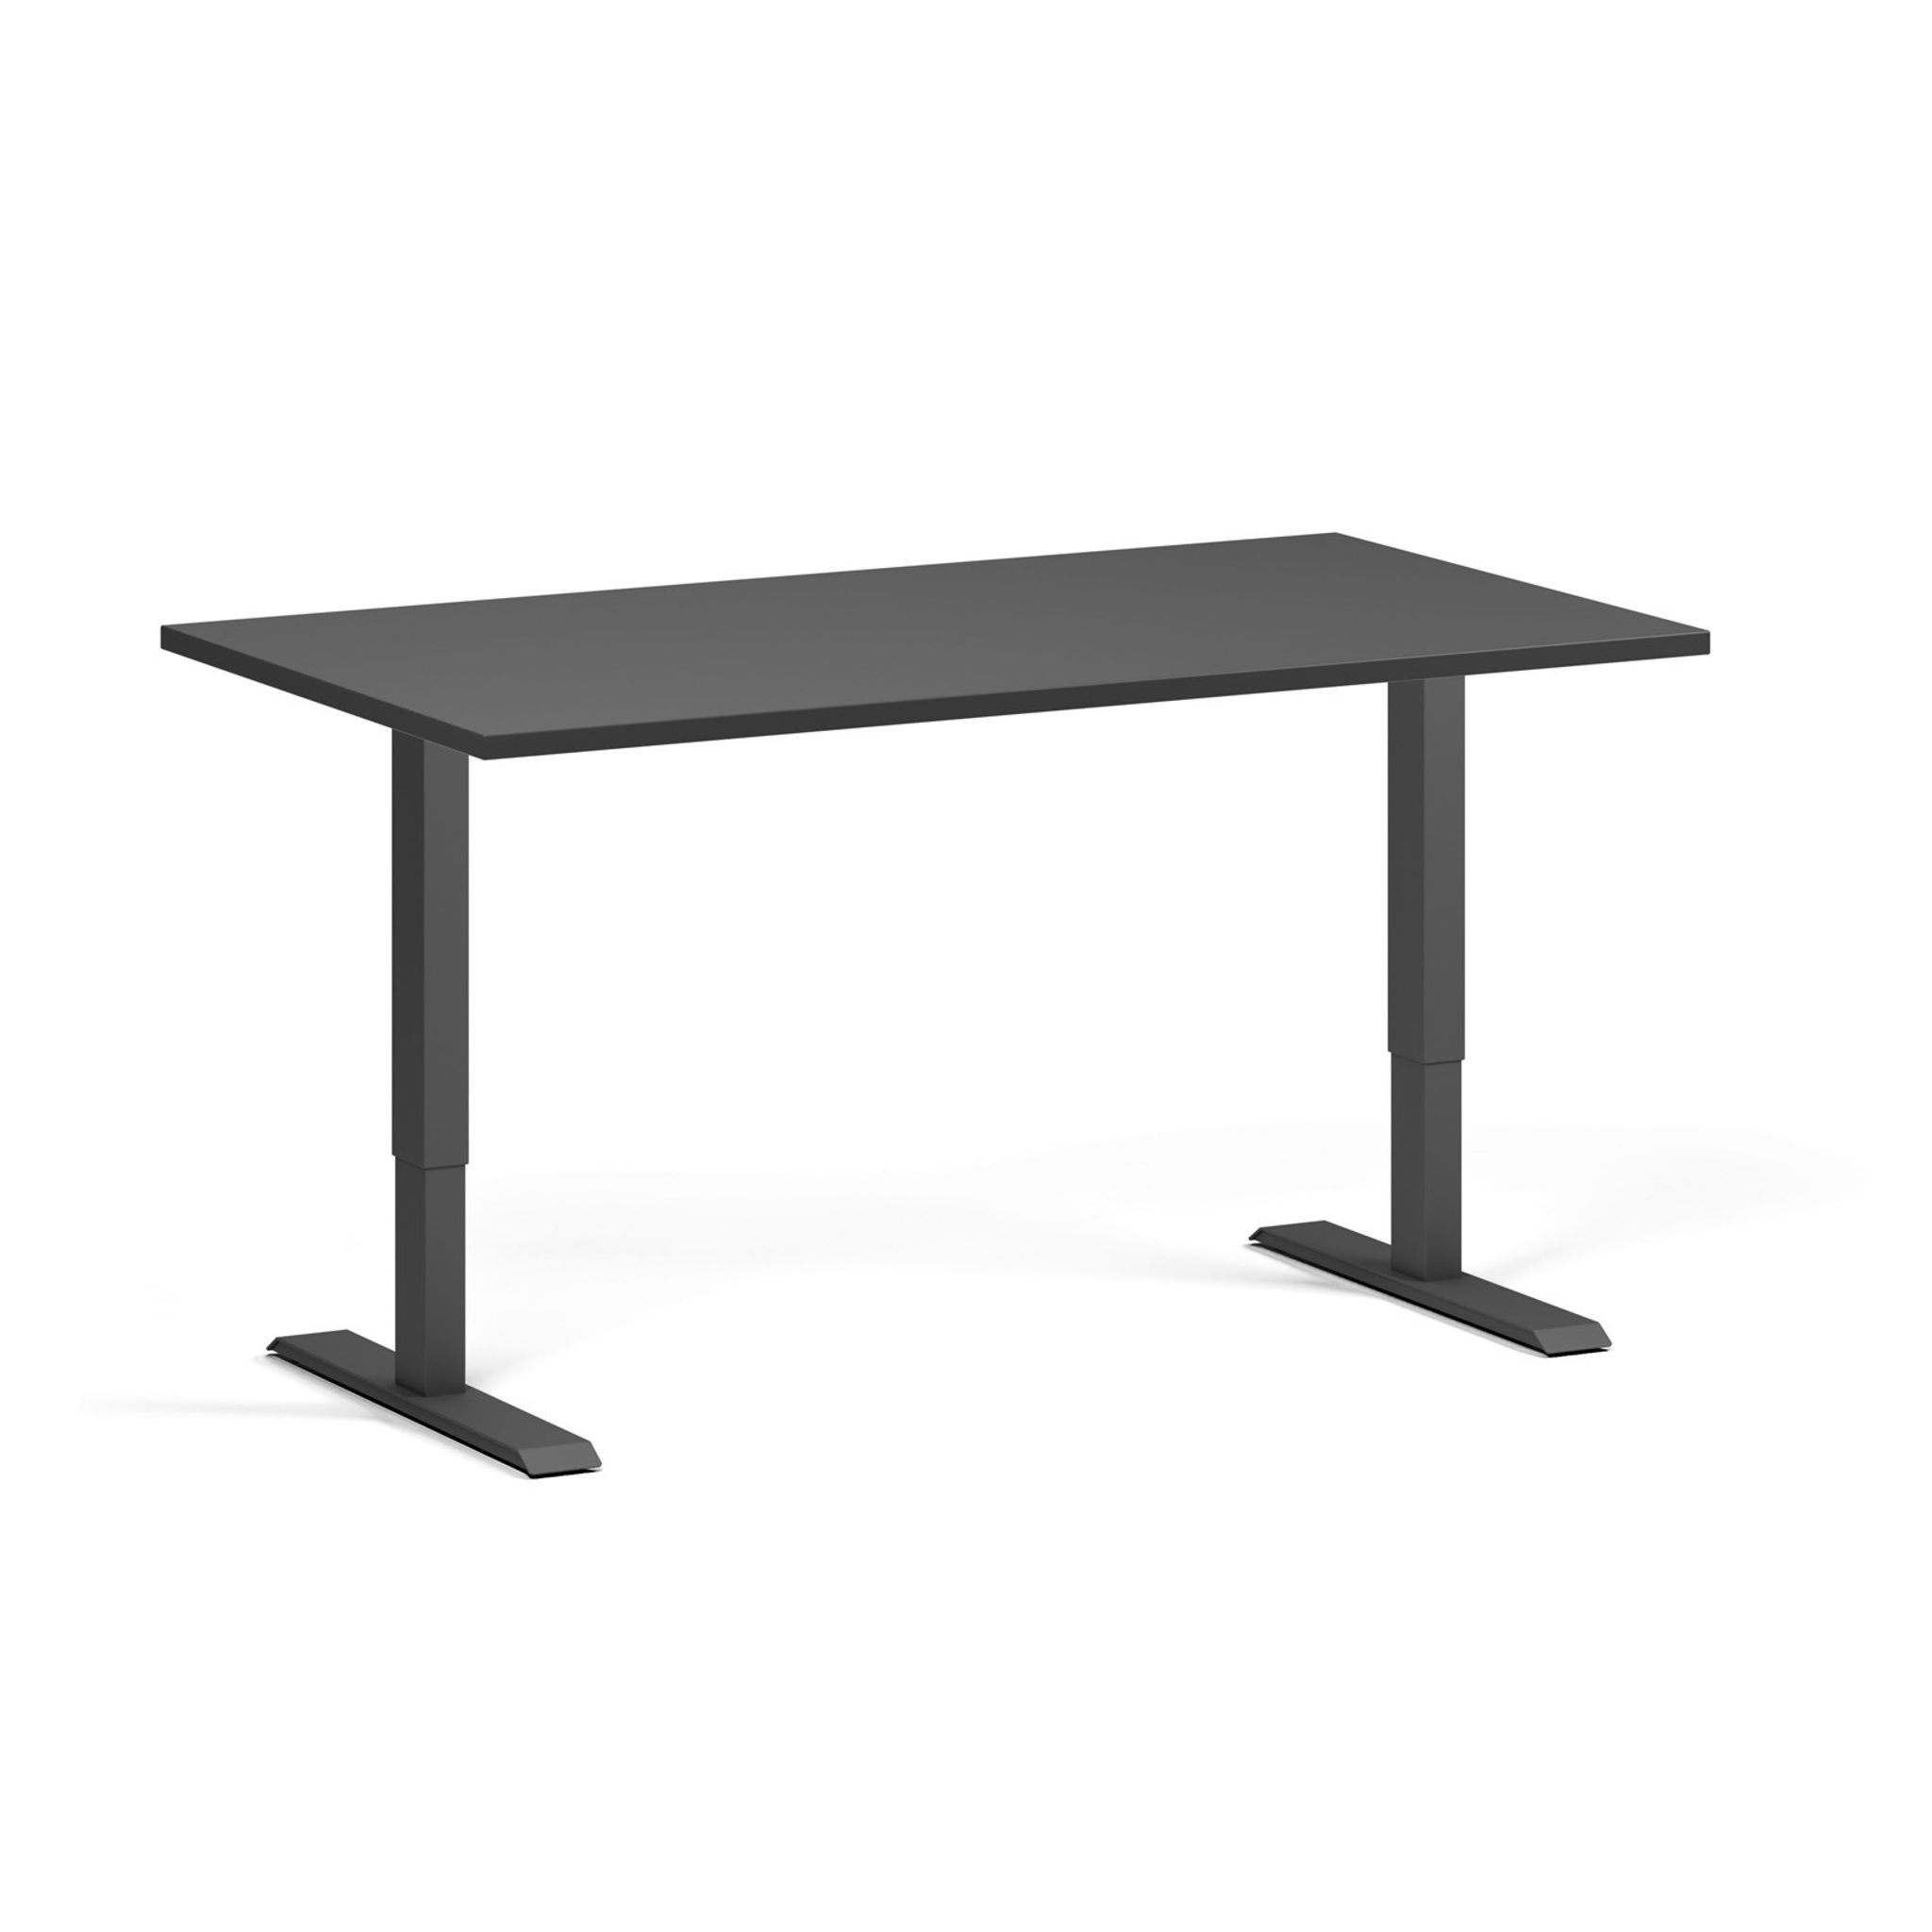 Výškově nastavitelný stůl, 2 motory, 745-1215 mm, deska 1400x800 mm, černá podnož, grafit